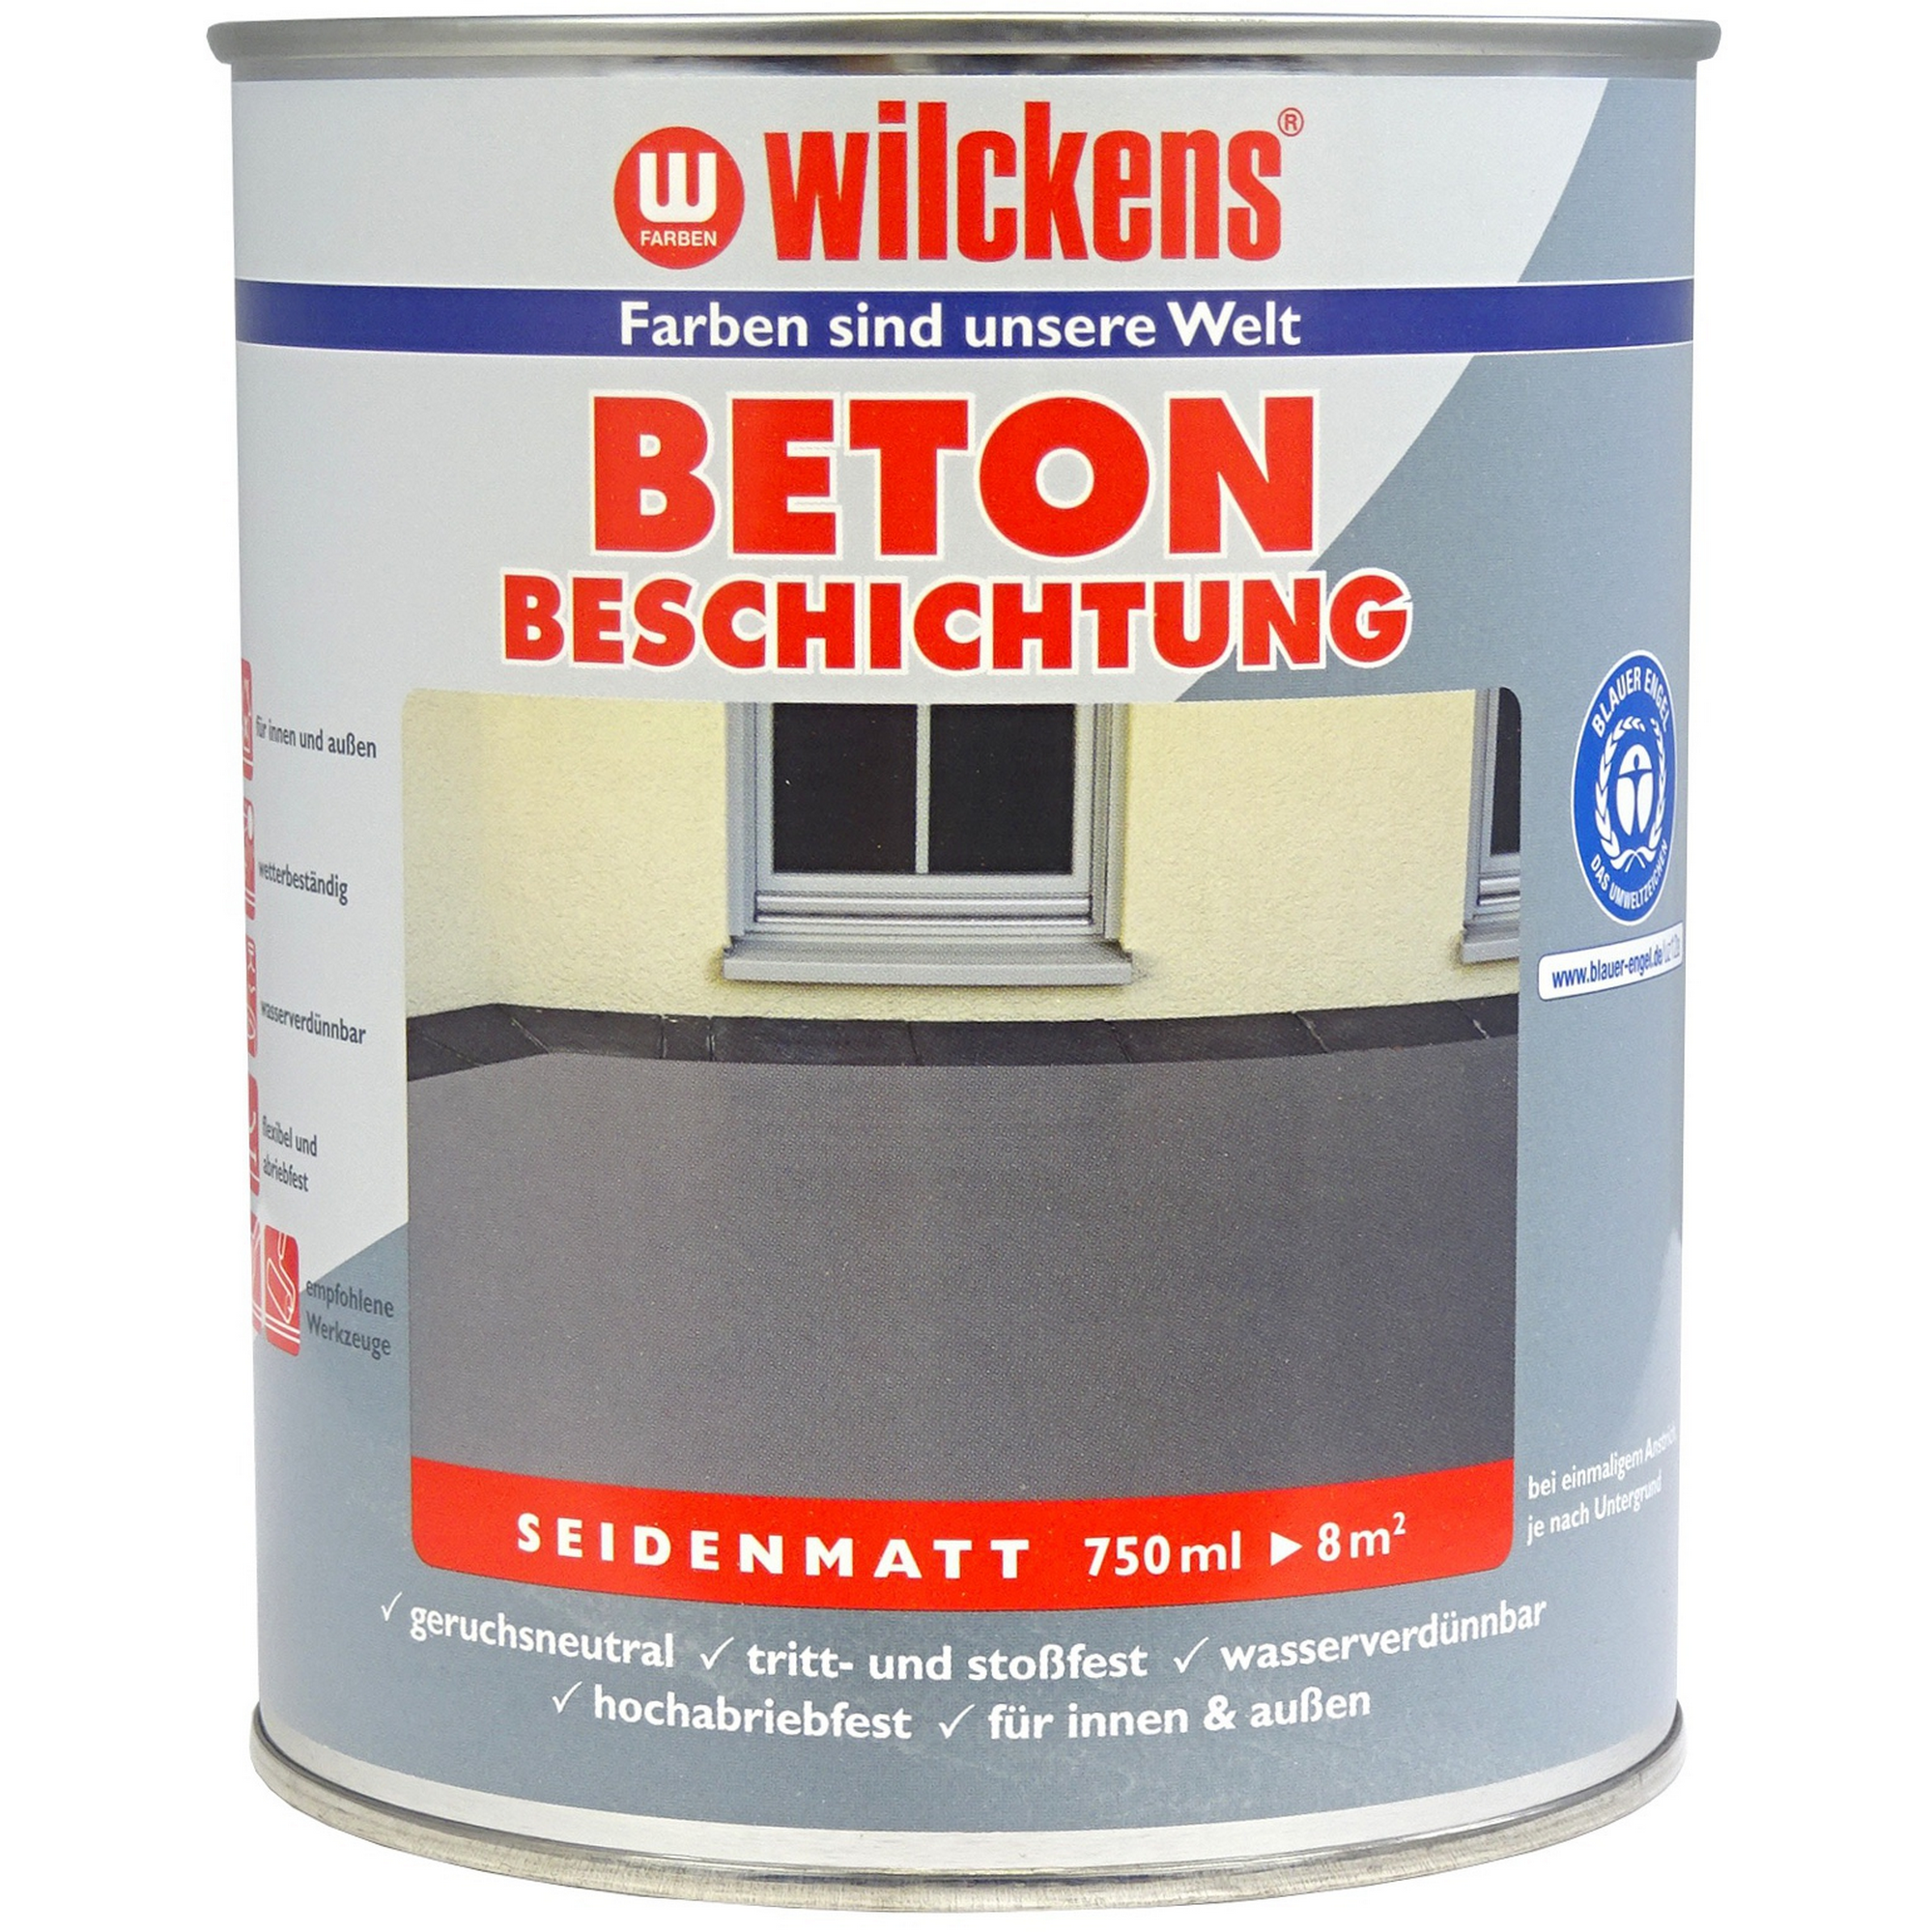 Bodenbeschichtung rotbraun 750 ml + product picture